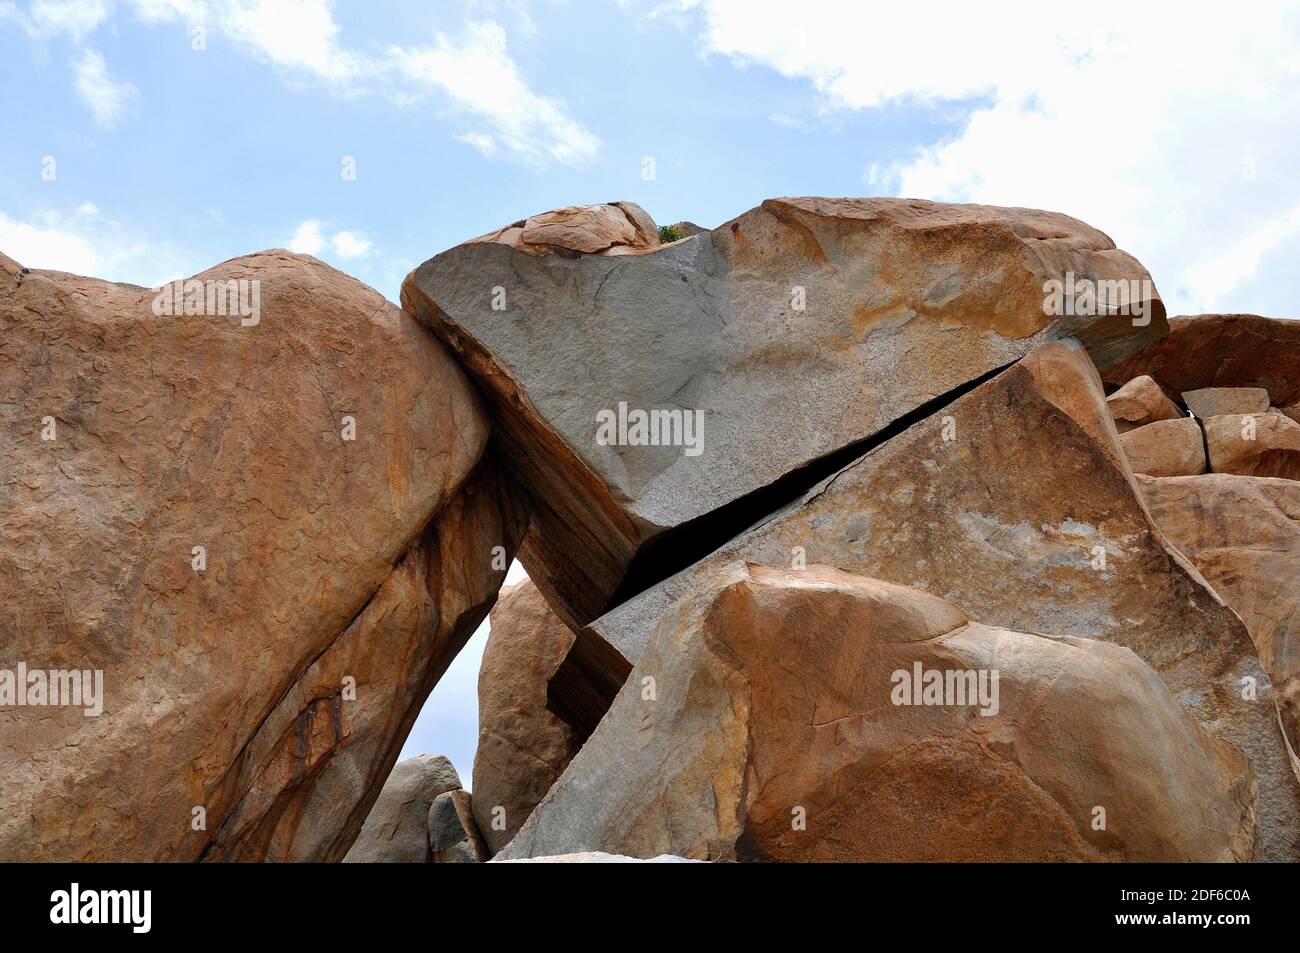 Diaklasen in einem Granitgestein. Diaclase ist ein Bruch in einem Gestein ohne signifikante Verdrängung der Parteien. Dieses Foto wurde in Hampi, Indien, aufgenommen. Stockfoto